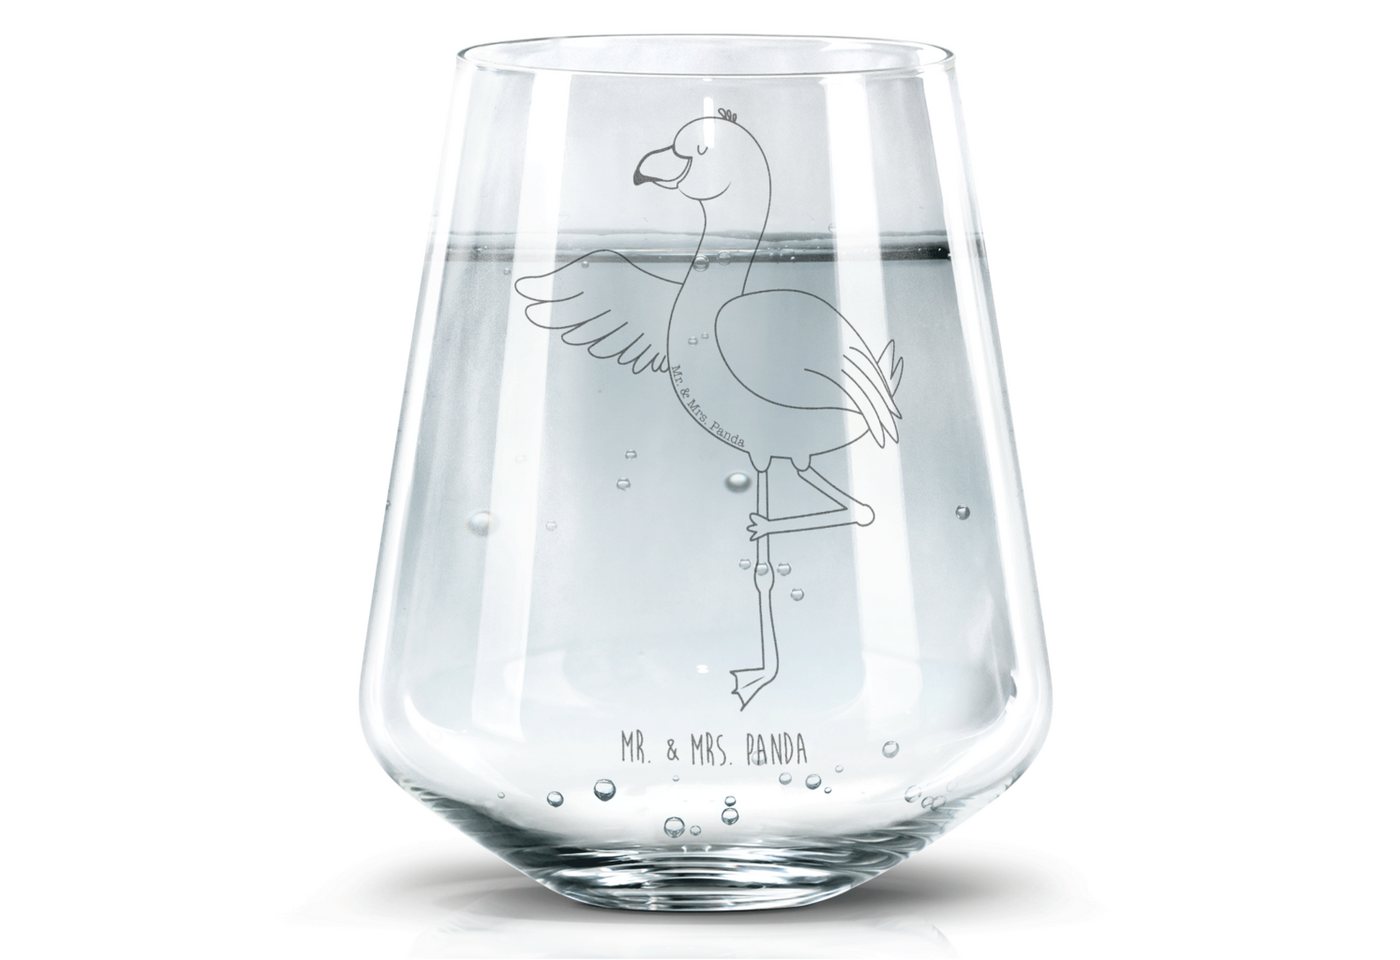 Mr. & Mrs. Panda Glas Flamingo Yoga - Transparent - Geschenk, Yogapose, Trinkglas, Wassergl, Premium Glas, Hochwertige Lasergravur von Mr. & Mrs. Panda